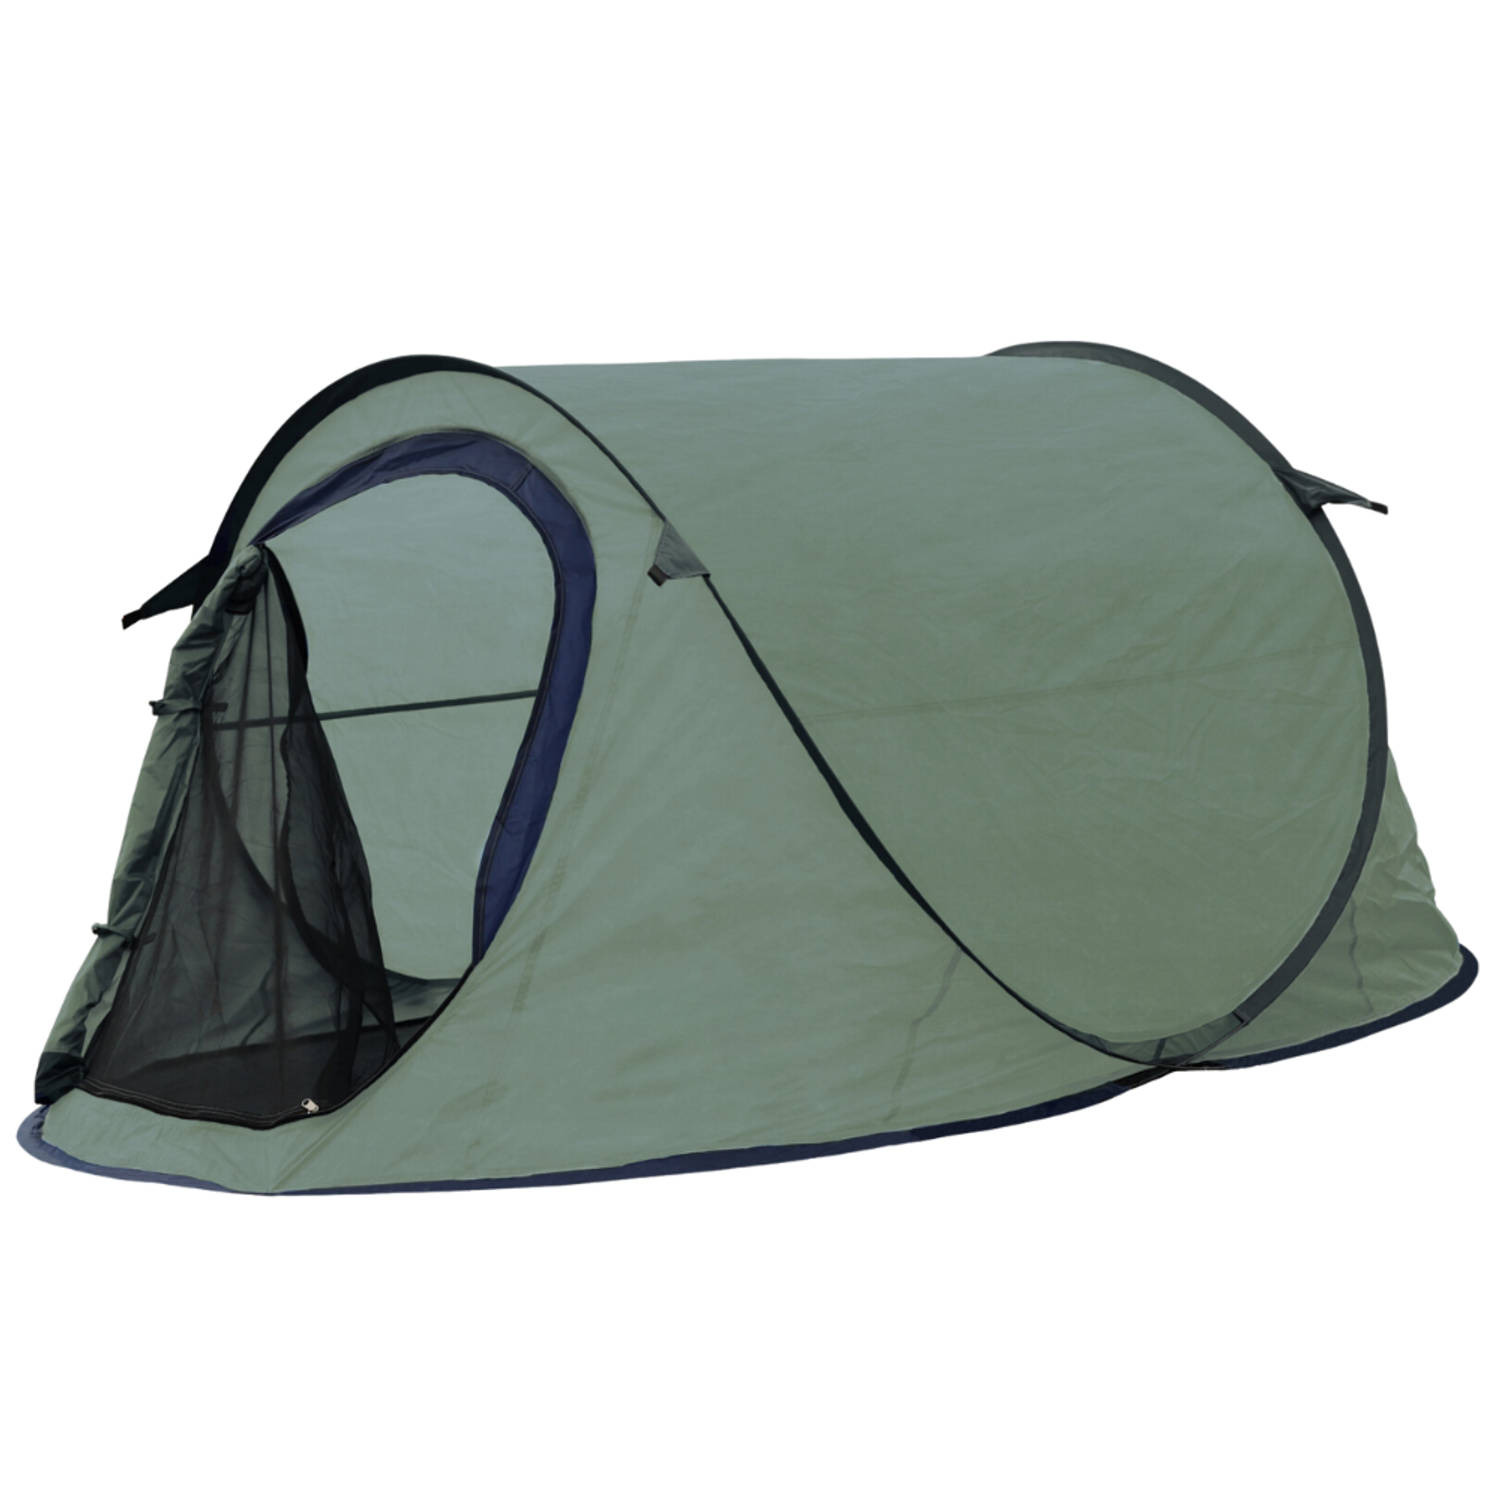 Orange85 Pop Up Tent Groen Camping 220x120x95cm 2 Personen